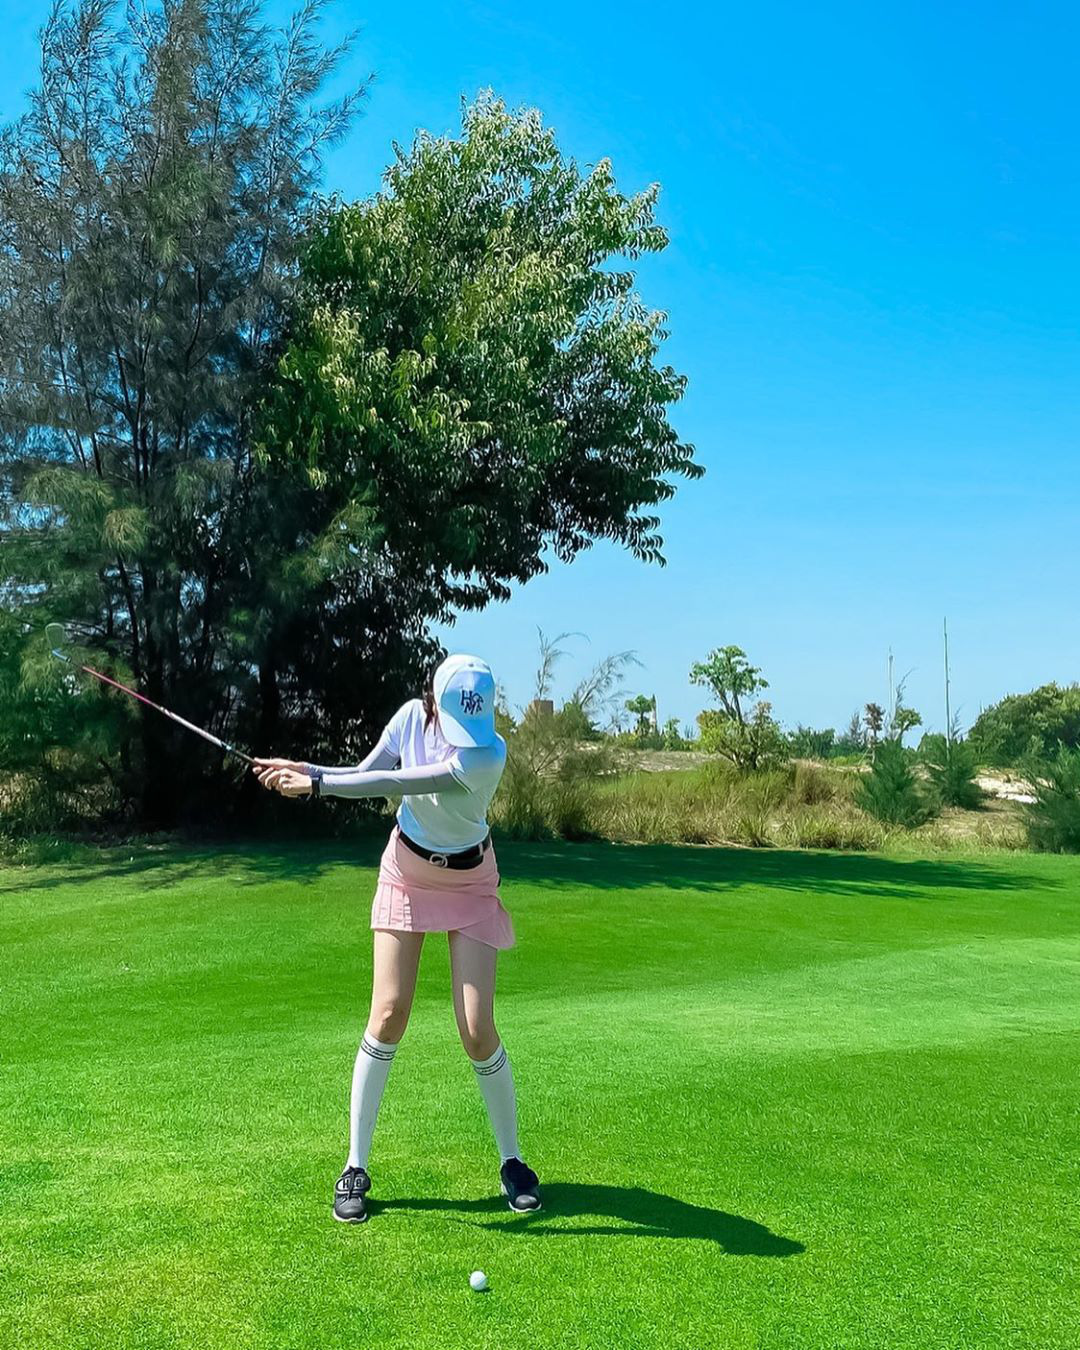 Thật tuyệt vời khi gái xinh đang chụp ảnh trên sân golf, với không gian tươi mới và thoáng rộng. Hãy cùng thưởng thức bức ảnh của họ và cảm nhận sự phấn khích và hạnh phúc mà sân golf có thể mang lại.